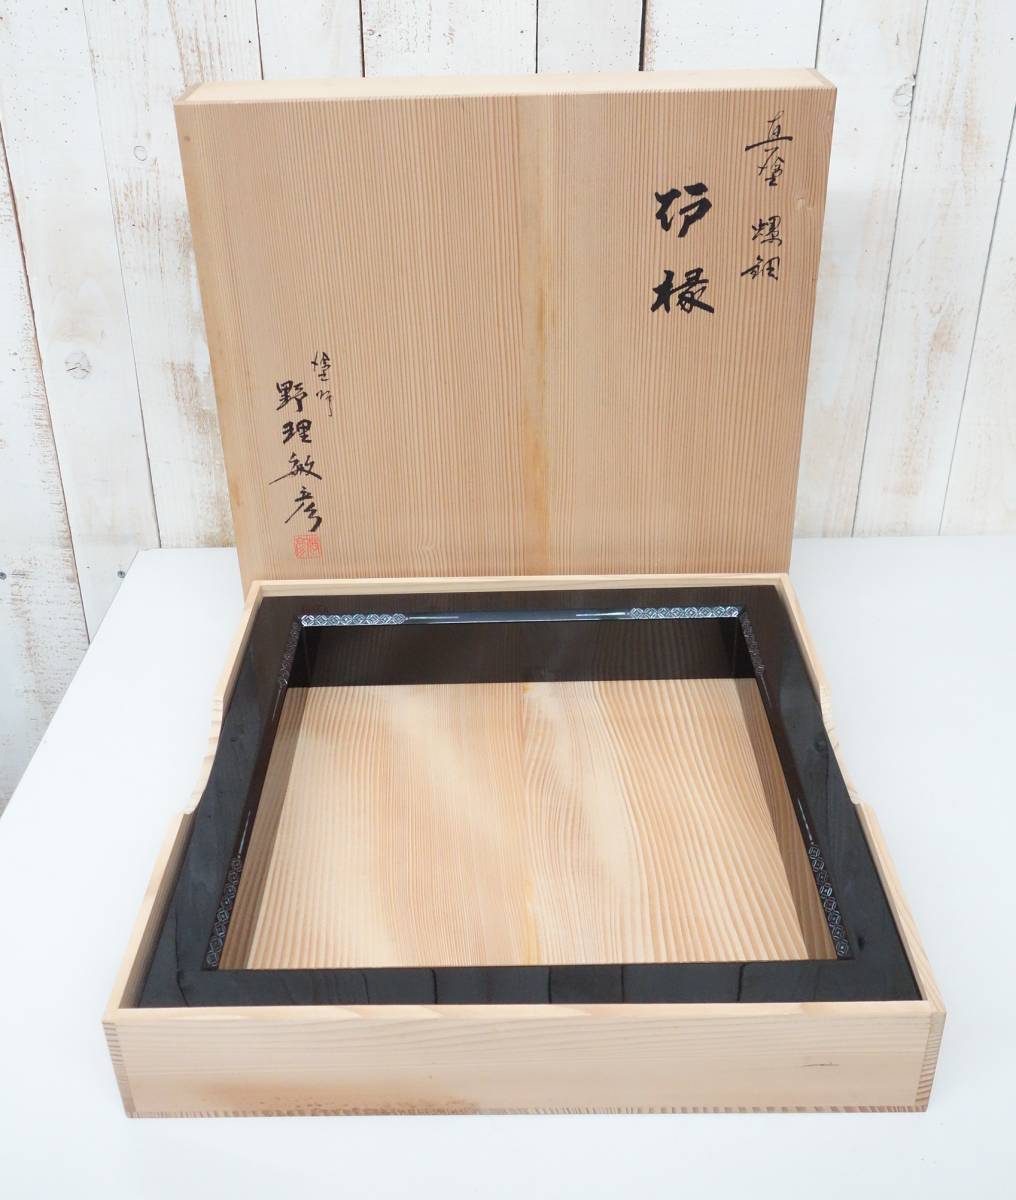 日本全国送料無料 炉縁 高台寺 桐菊紋様 蒔絵 茶道具 茶道 漆器 木箱 